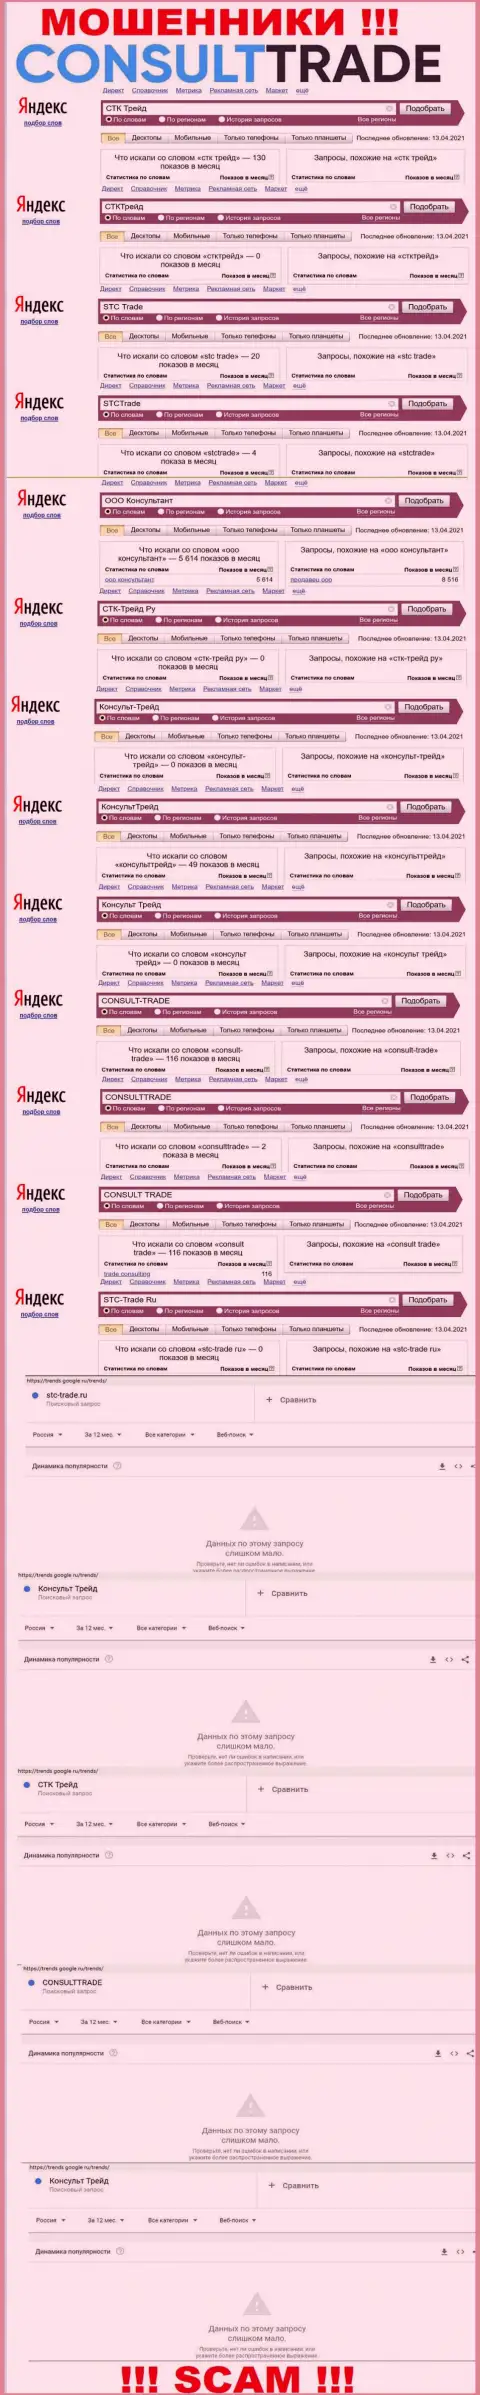 Скриншот итога online запросов по противозаконно действующей конторе STC Trade